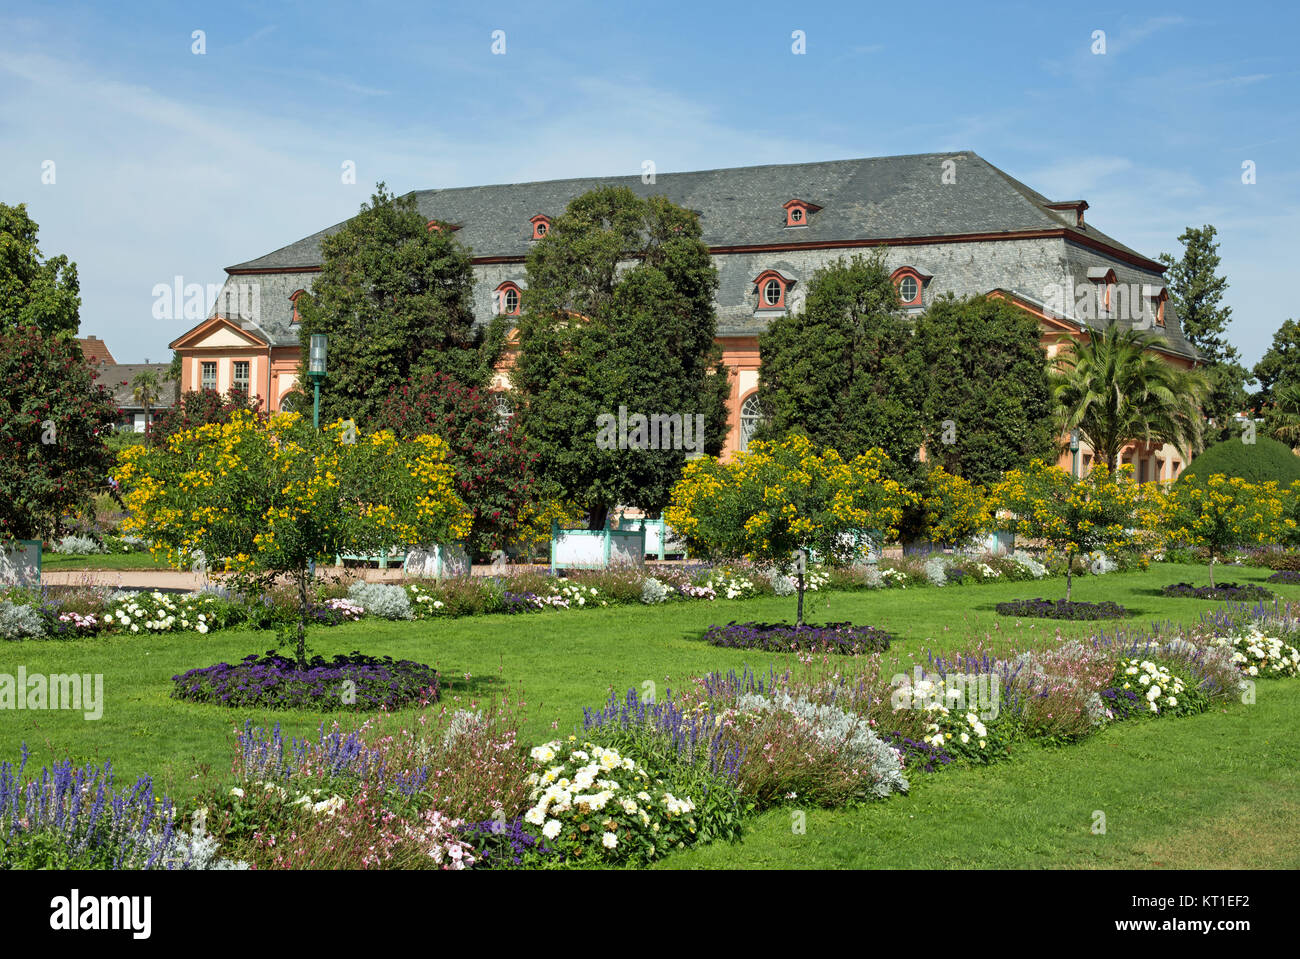 Orangeriegarten de Darmstadt (Hesse, Alemania) Foto de stock